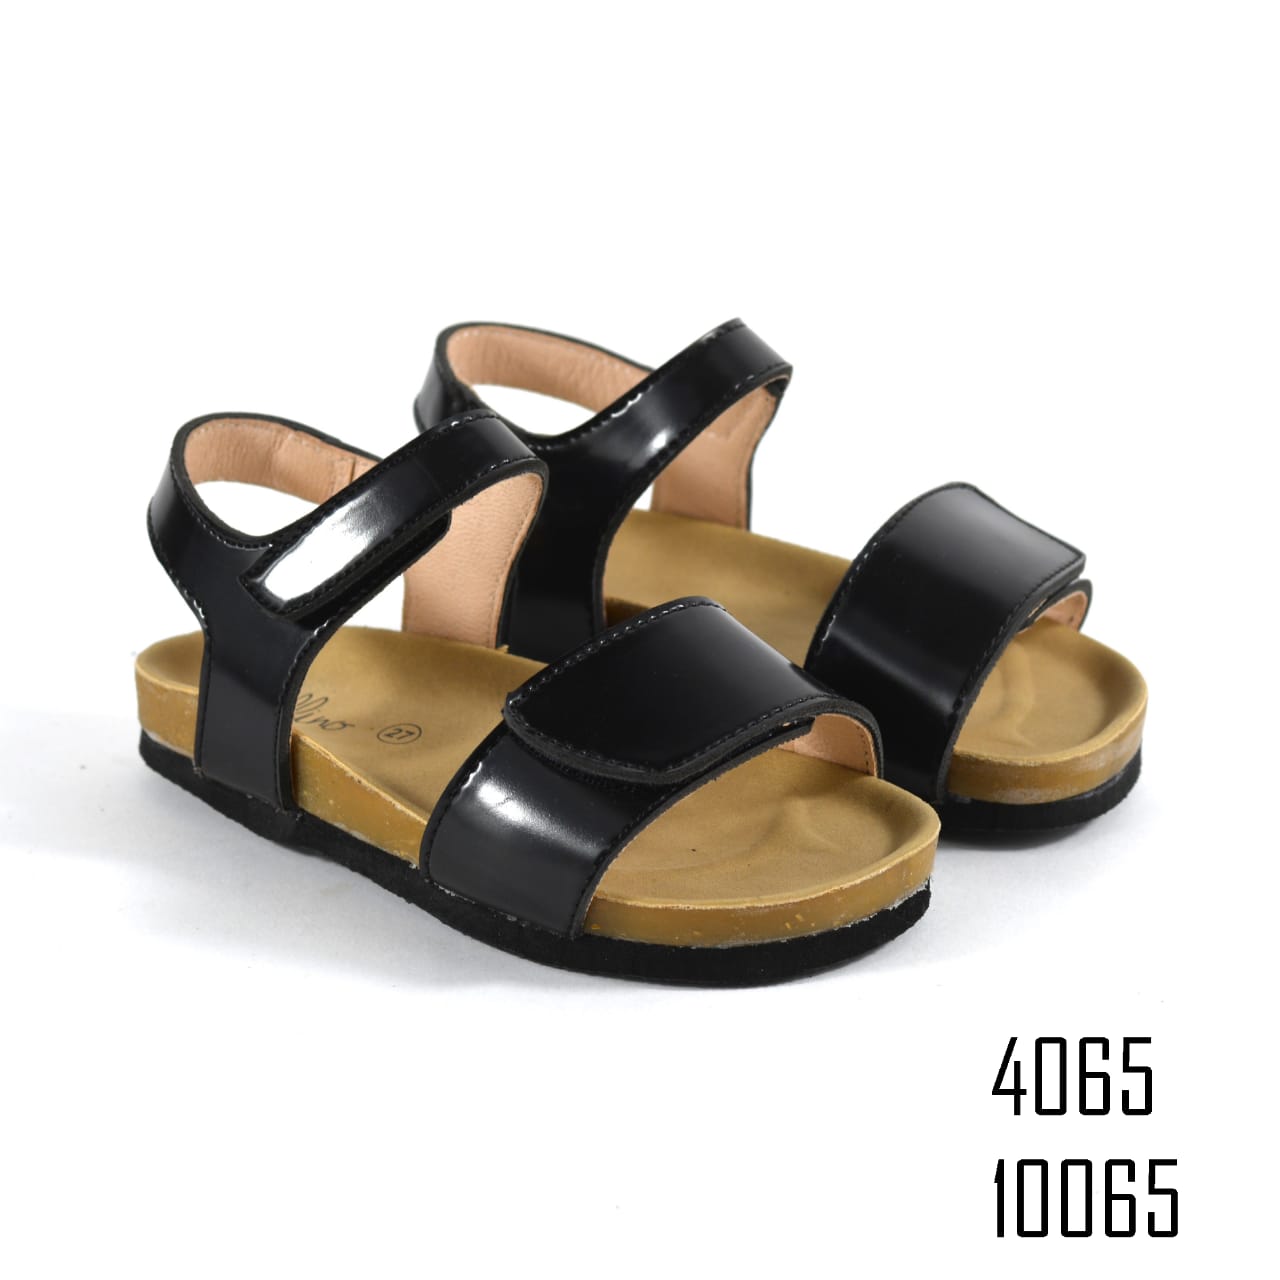 Belline Sandal For Girls -10065